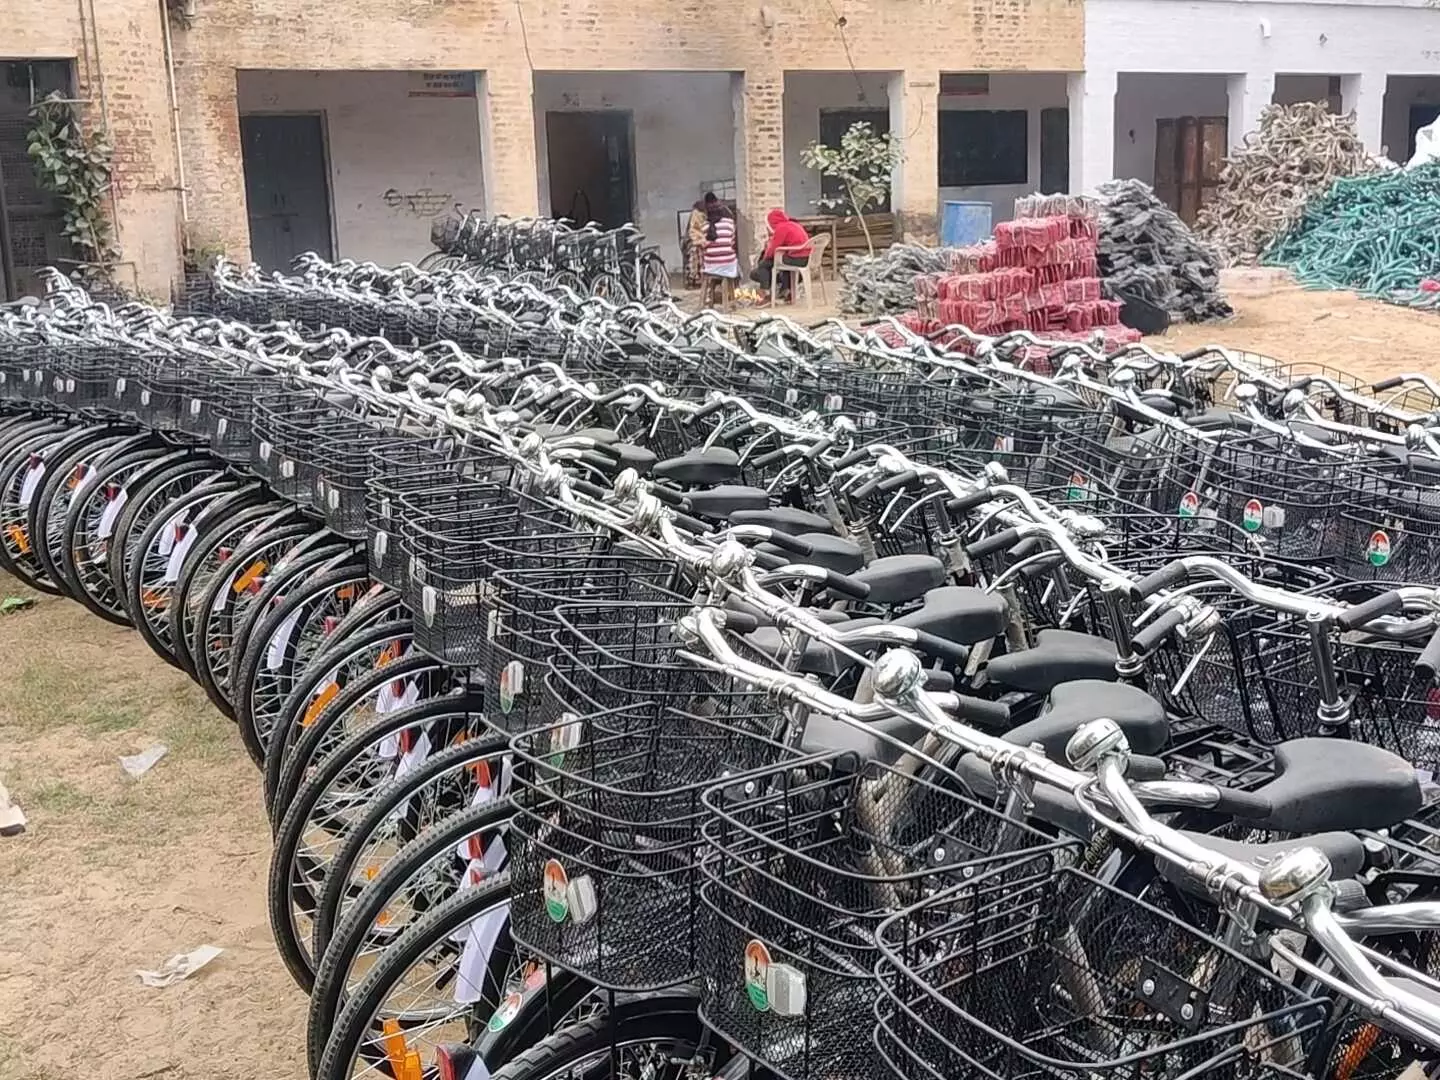 Hisar: साइकिल मेले के लिए 2 लाख रुपये का बजट जारी